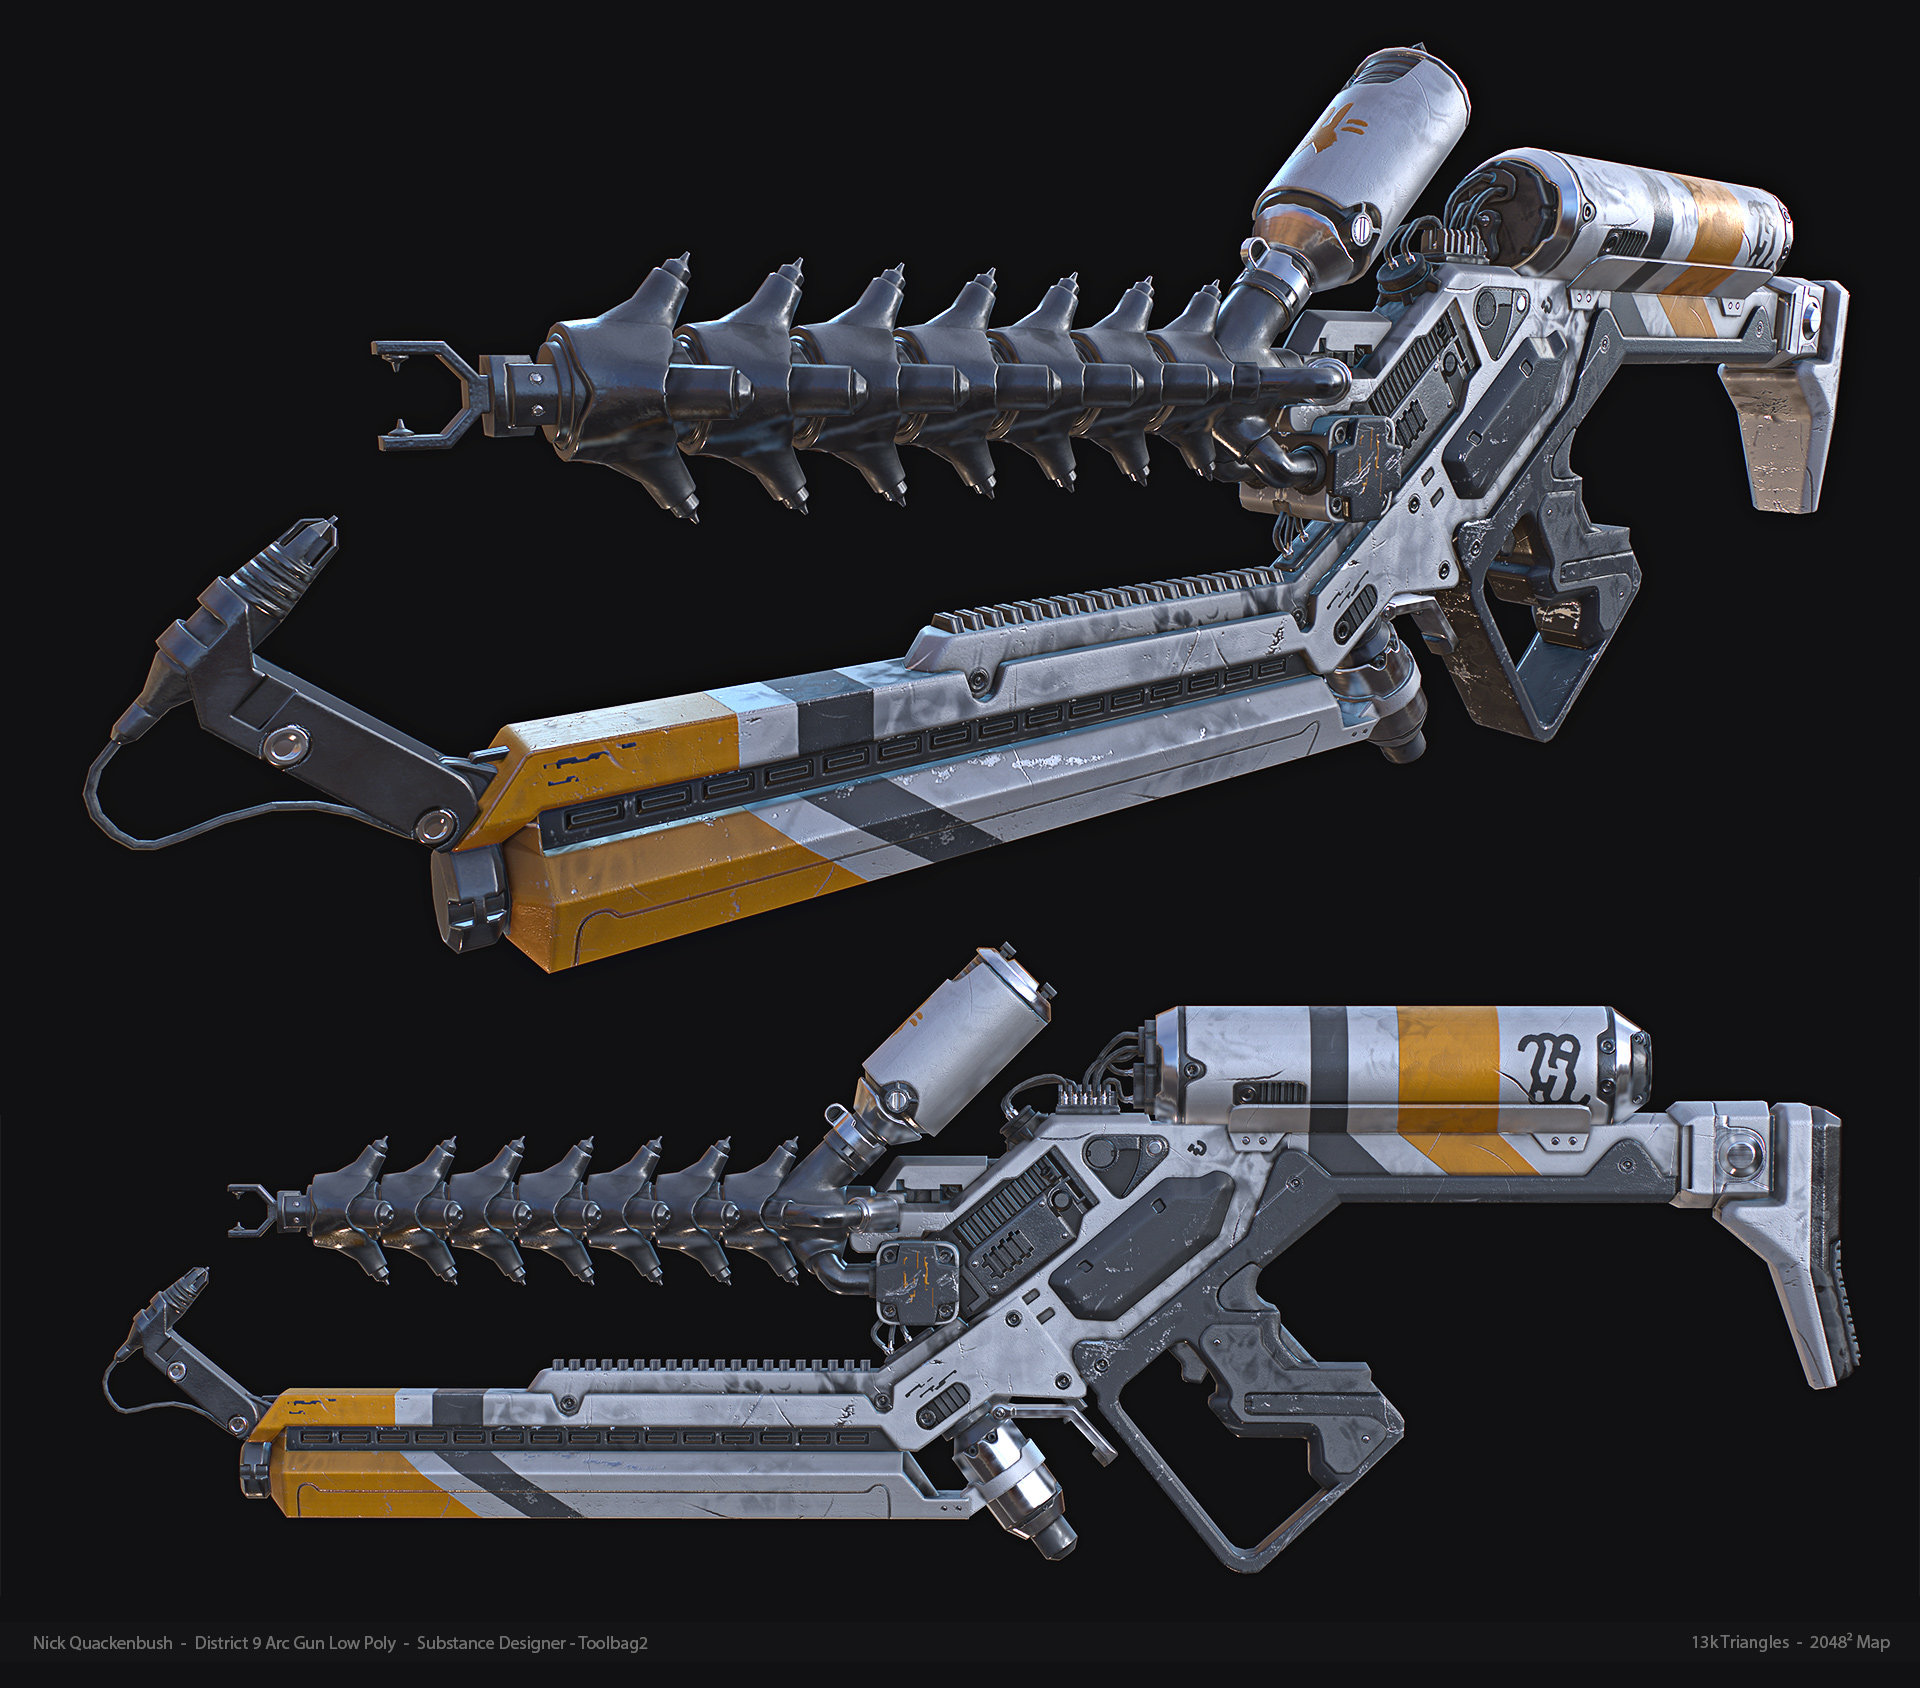 Arc 9. District 9 оружие. District 9 Weapon Concept. District 9 Concept Art. The Arc-Gun-9.